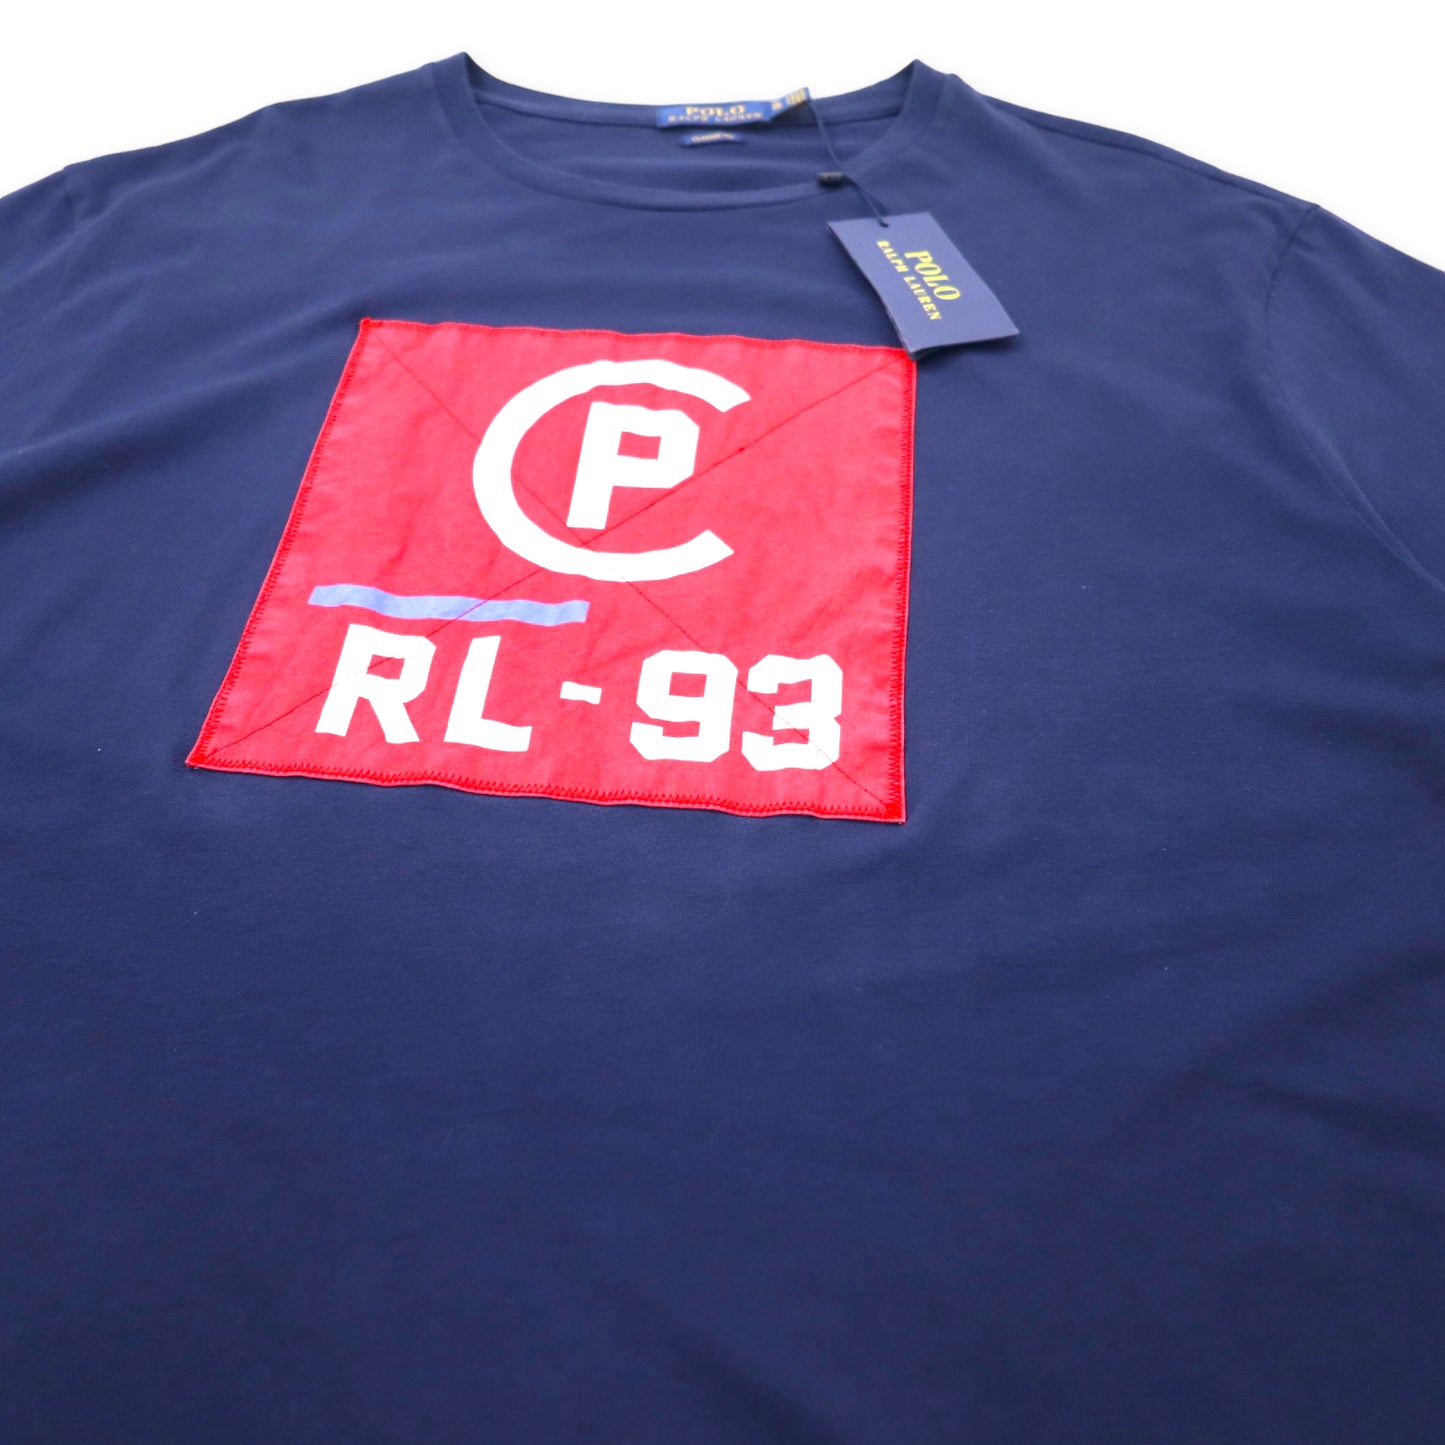 POLO RALPH LAUREN カプセルコレクション CP RL-93 Tシャツ XL ネイビー コットン CAPSULE 未使用品